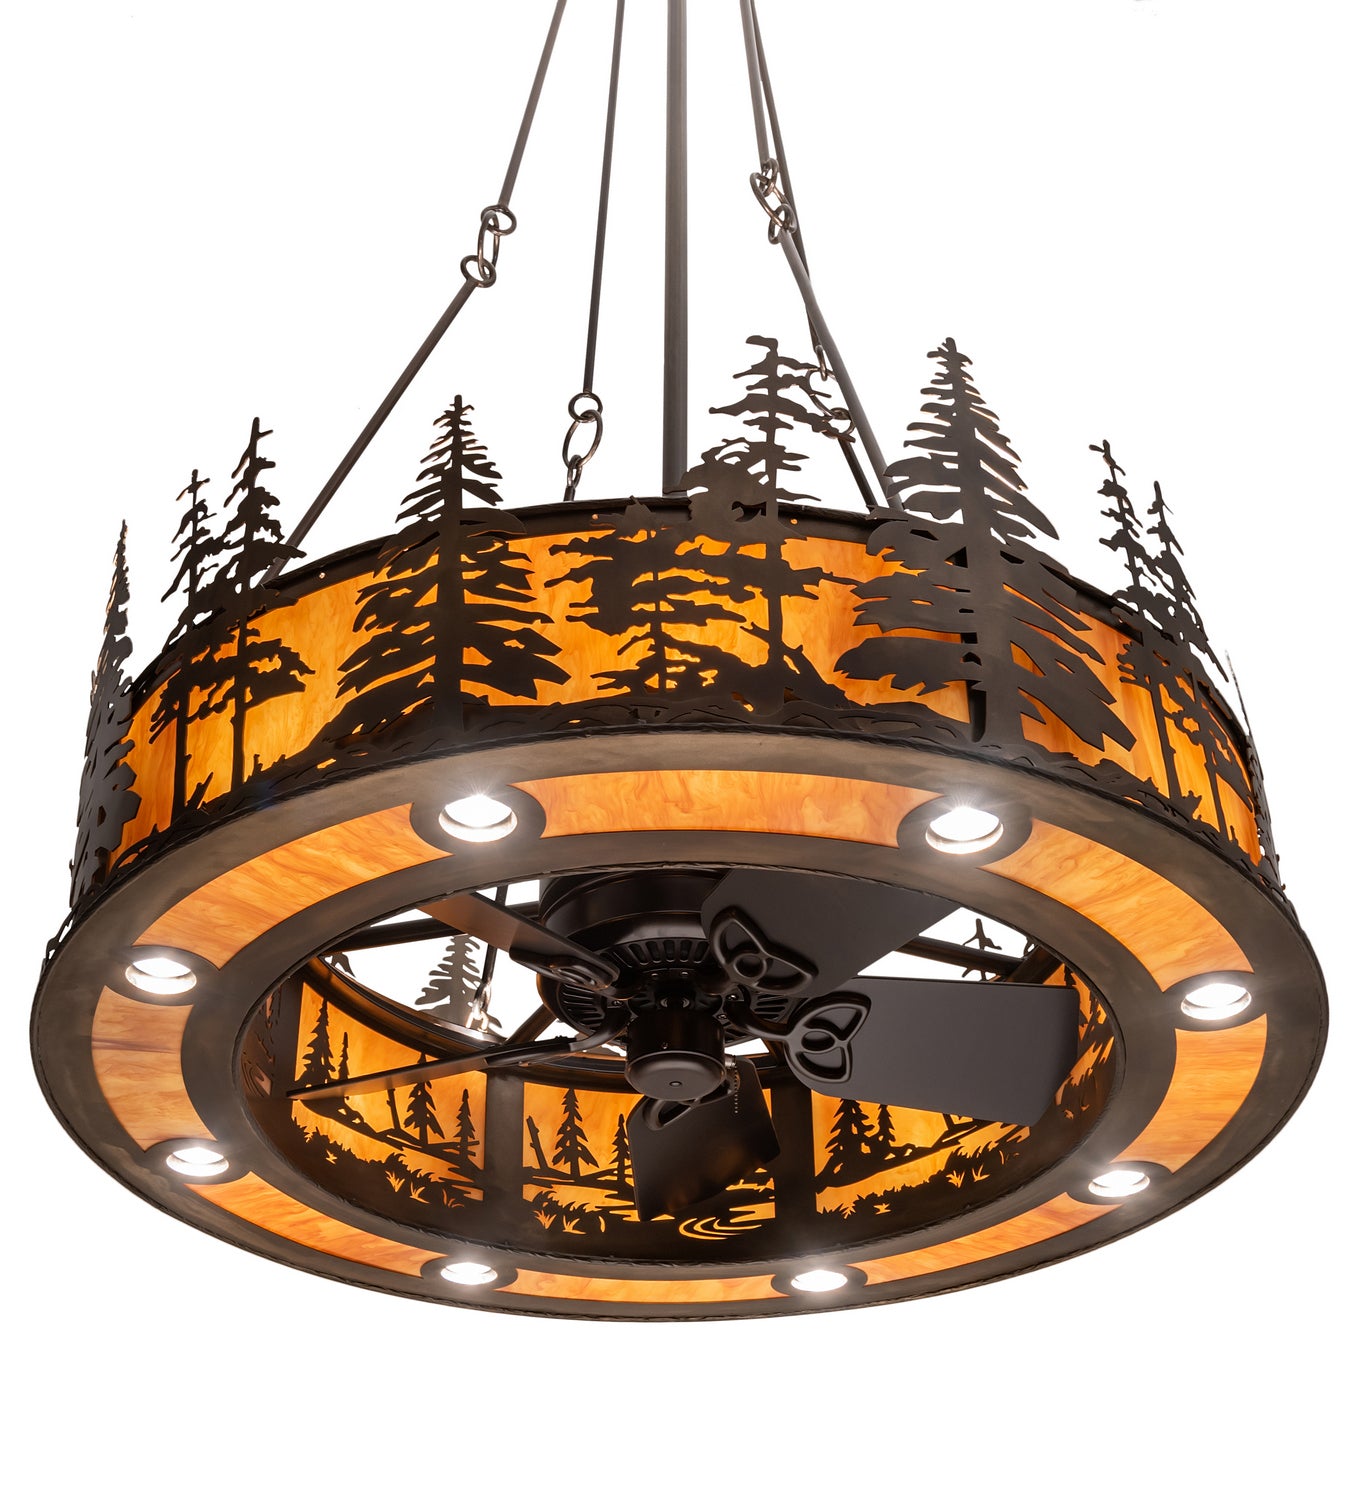 Meyda Tiffany Tall Pines 201993 Ceiling Fan - Antique Copper